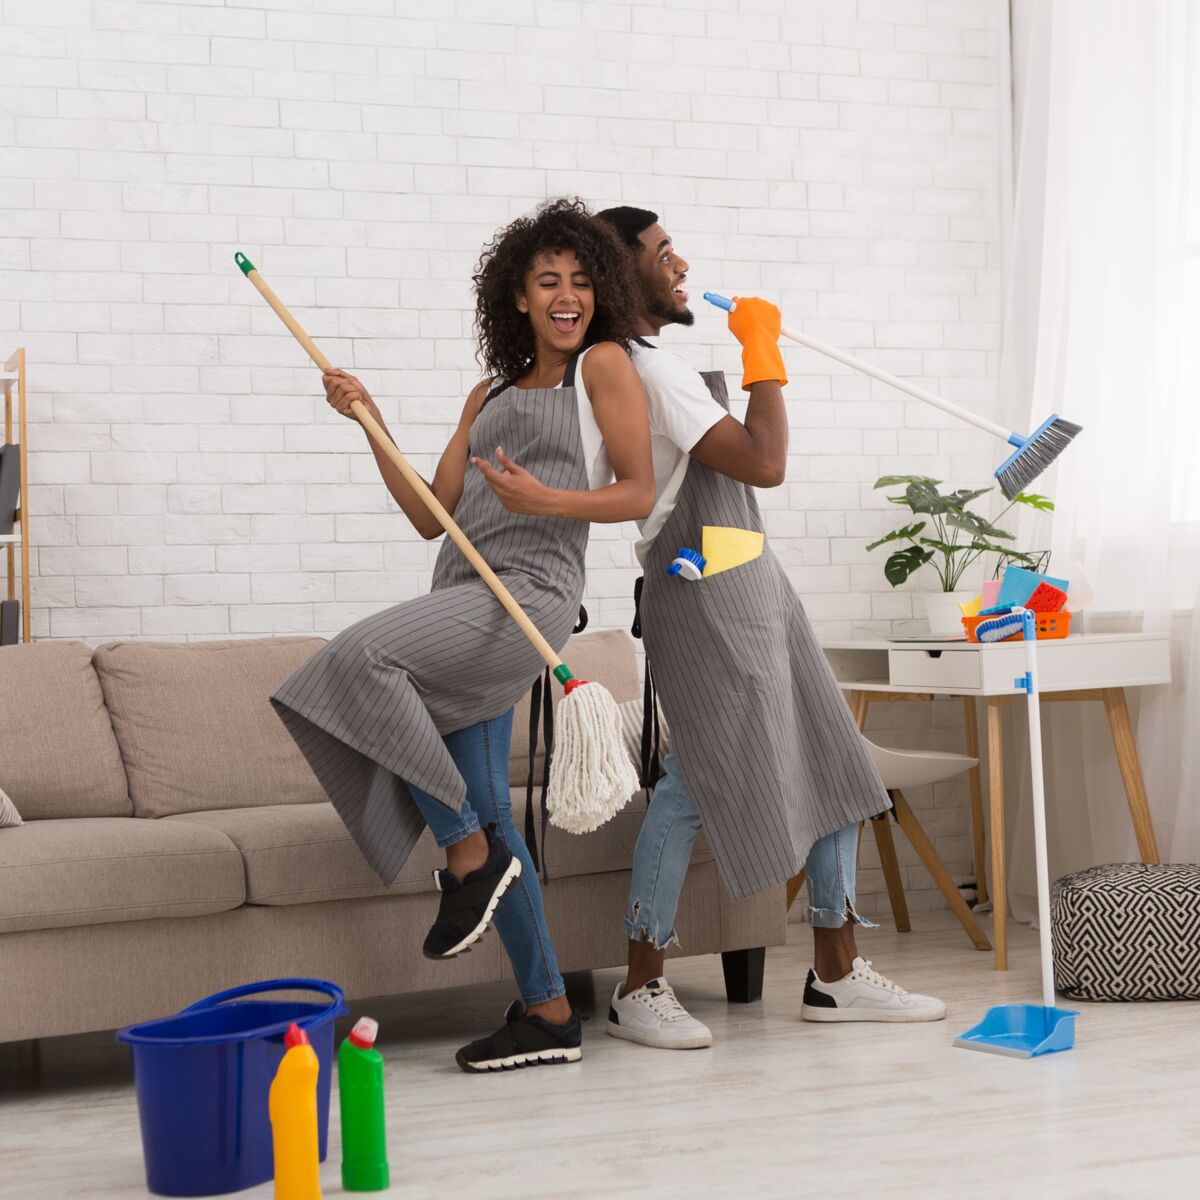 Les tâches ménagères